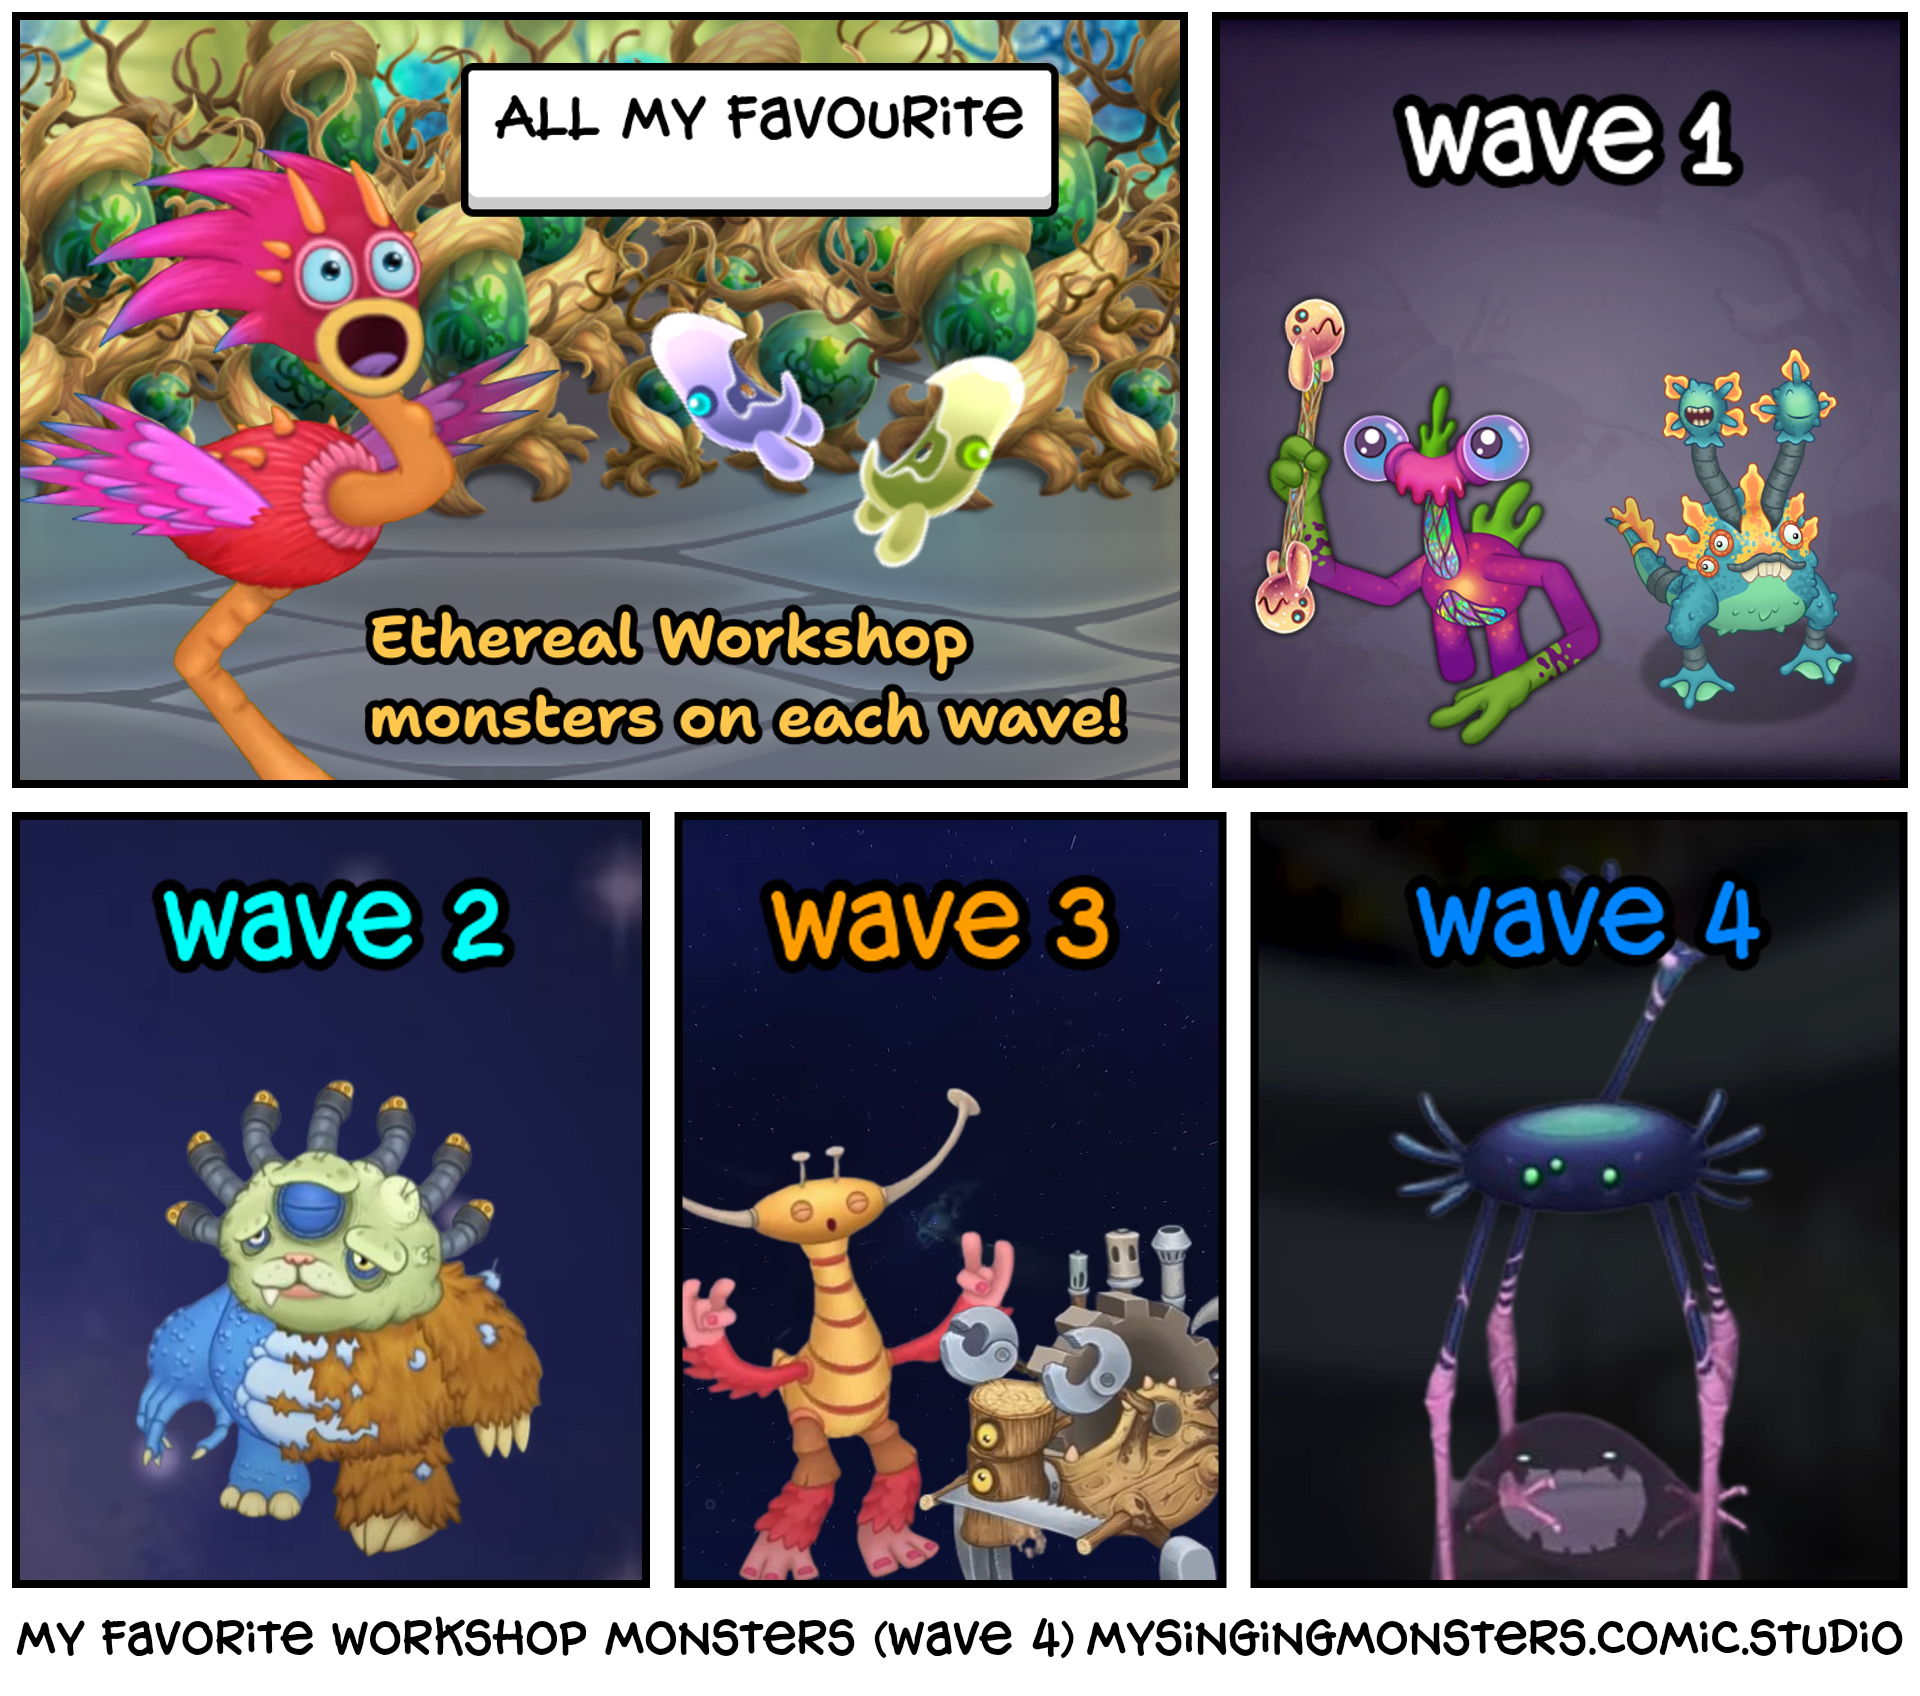 my favorite workshop monsters (wave 4)